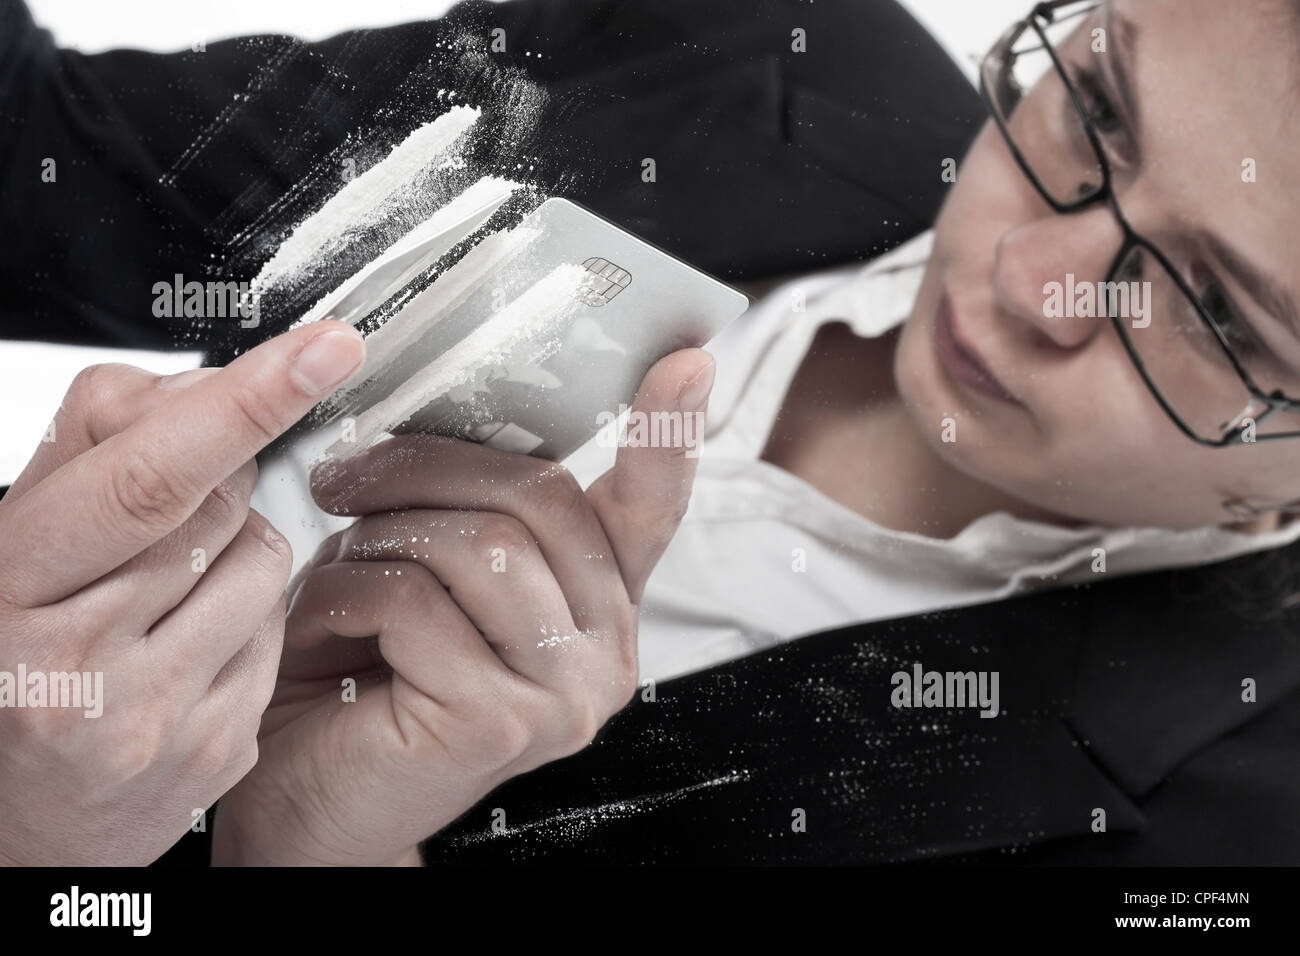 Droge süchtig Geschäftsfrau in Vorbereitung Linien Kokain Spiegel reflektiert. Stockfoto